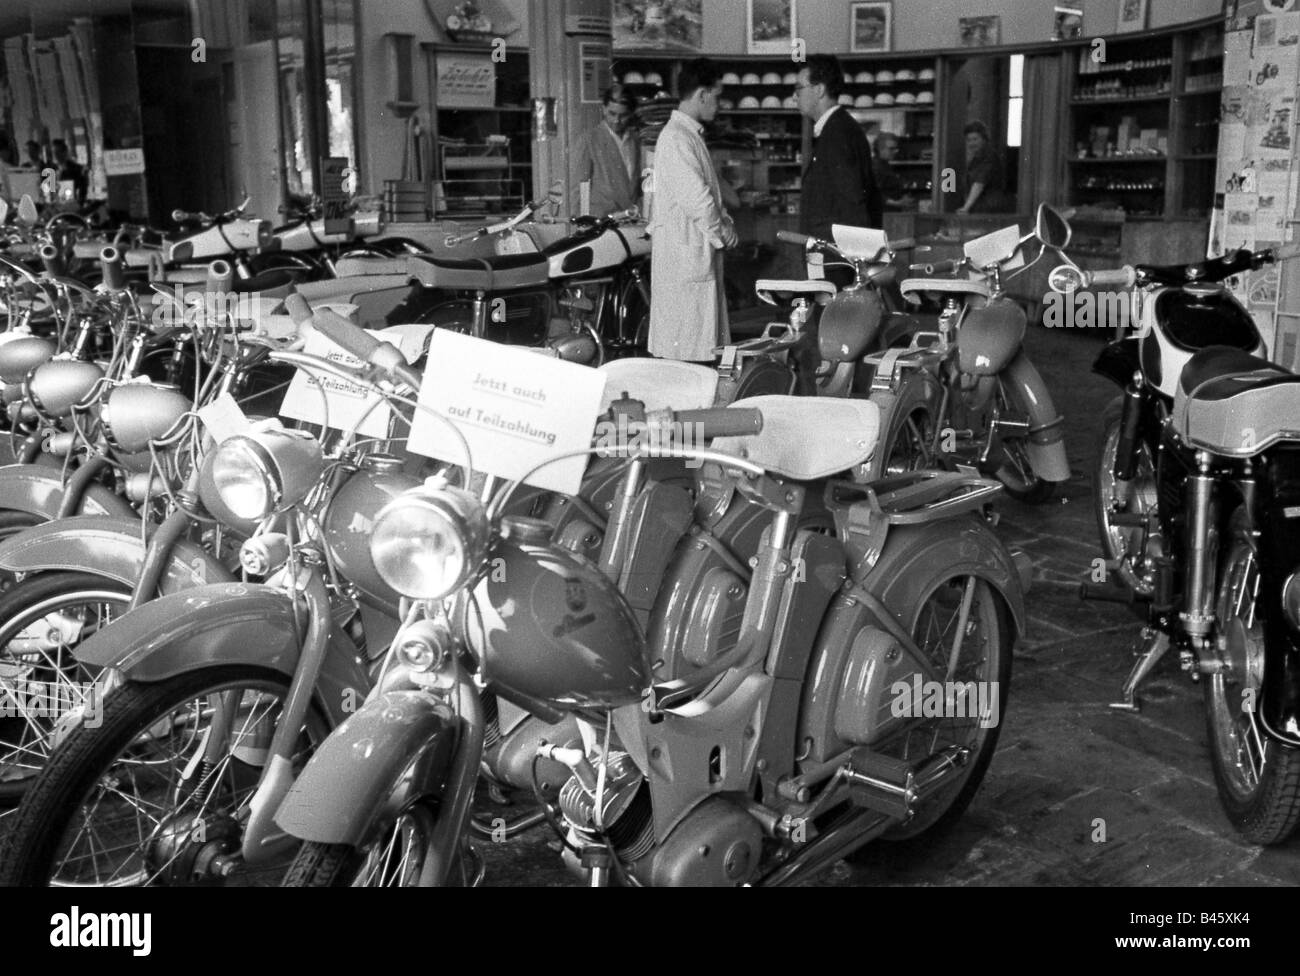 Trasporti/trasporti, moto, ciclomotore SR2E della società Simson/Suhl, in un negozio, luglio 1963, Foto Stock